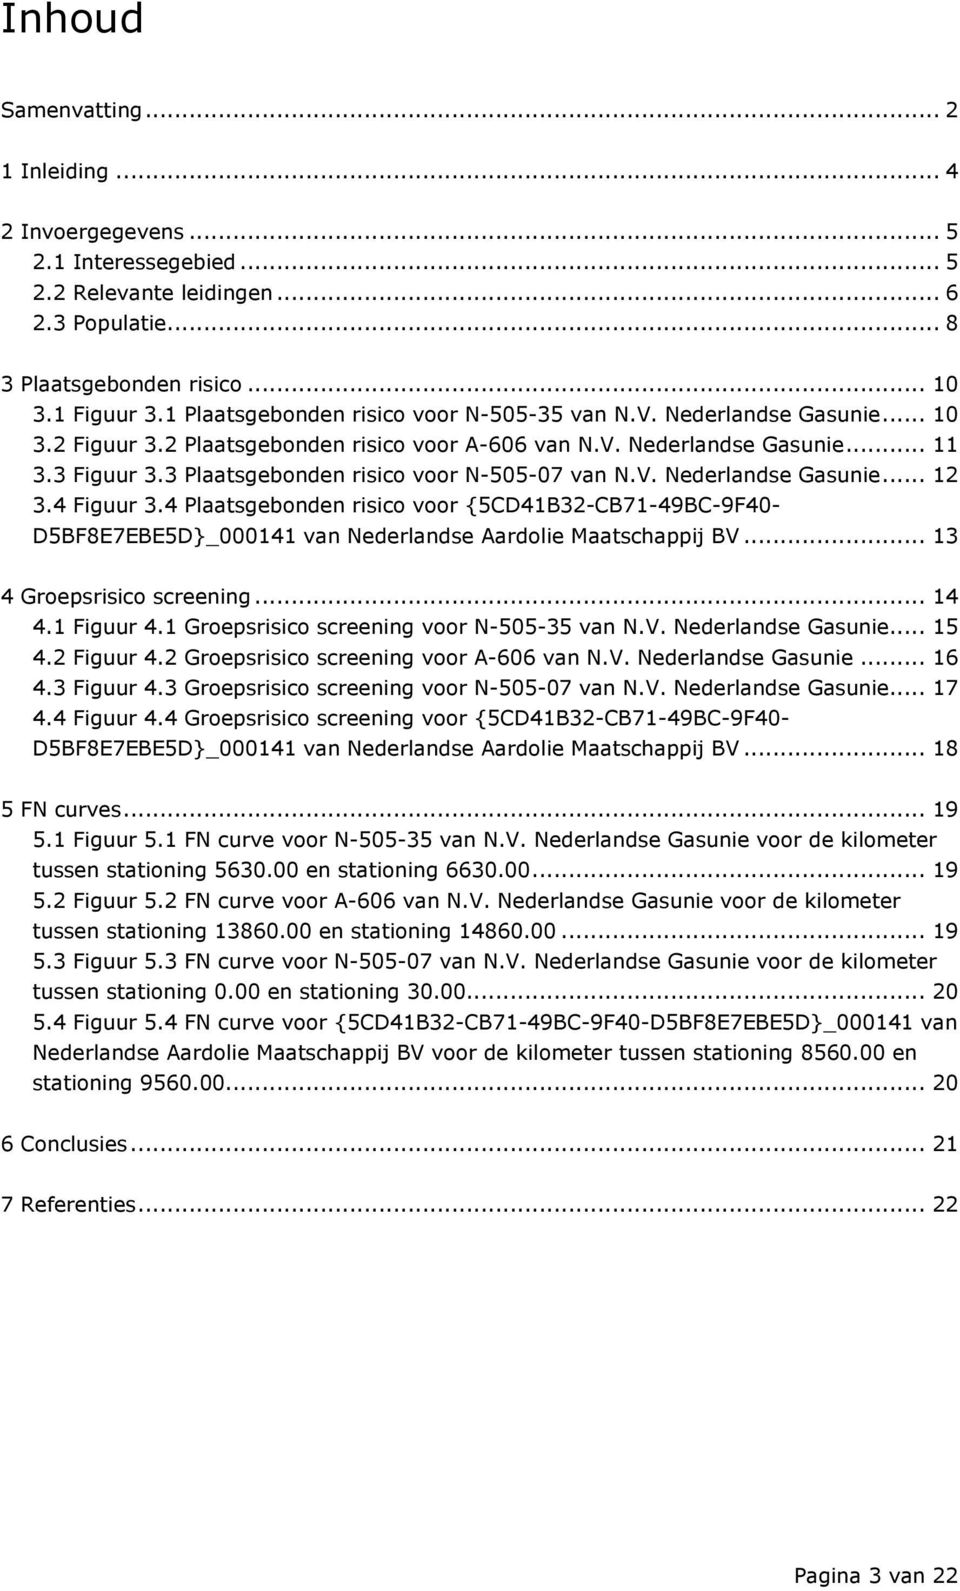 3 Plaatsgebonden risico voor N-505-07 van N.V. Nederlandse Gasunie... 12 3.4 Figuur 3.